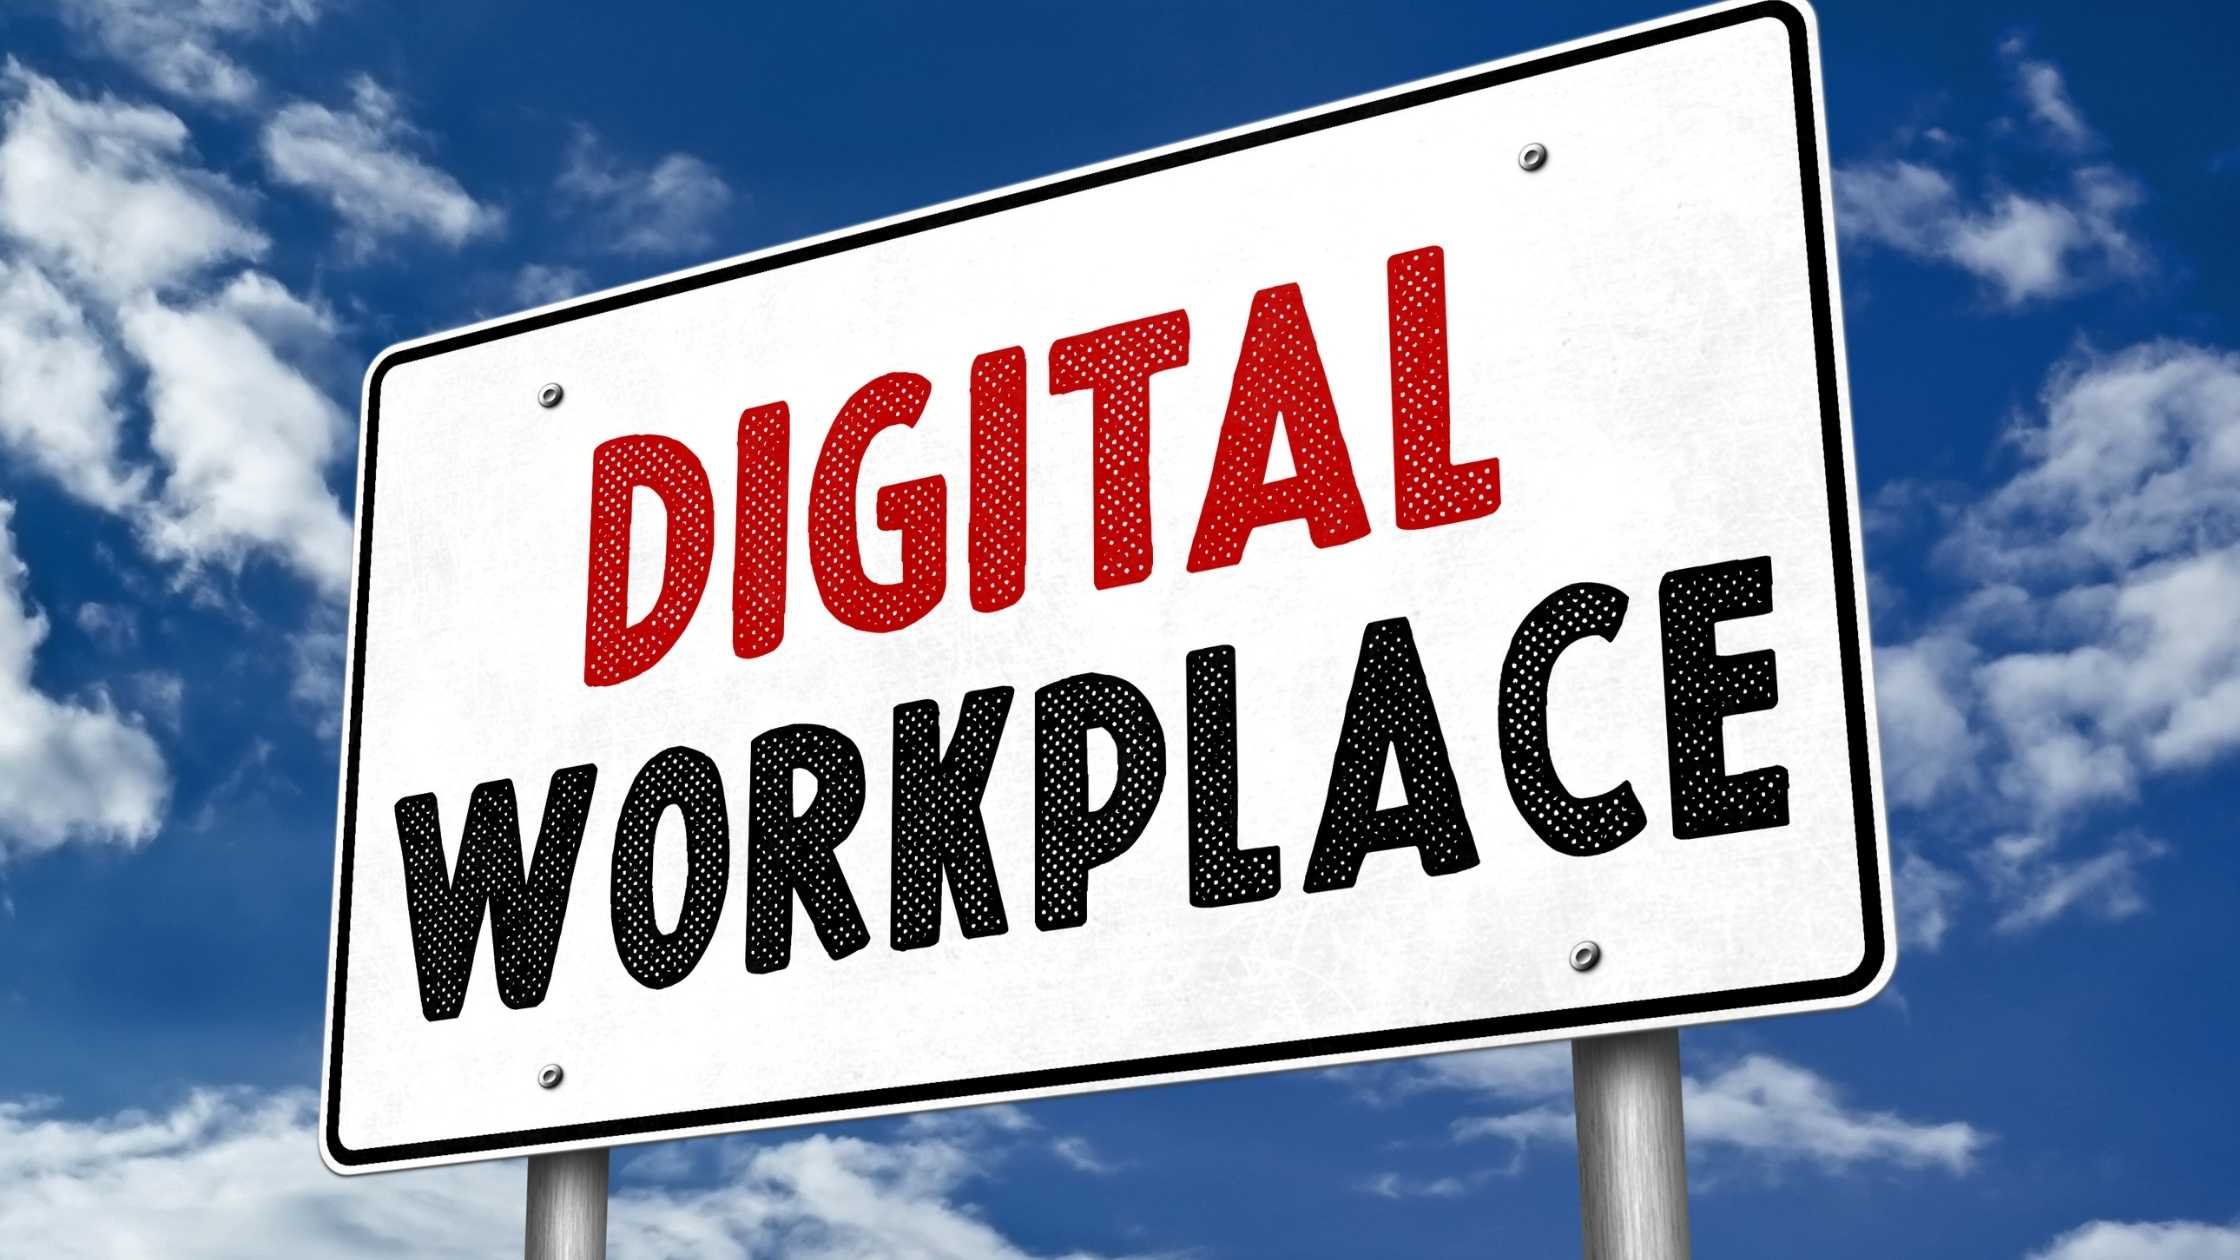 Der digitale Arbeitsplatz für besseres hybrides Arbeiten